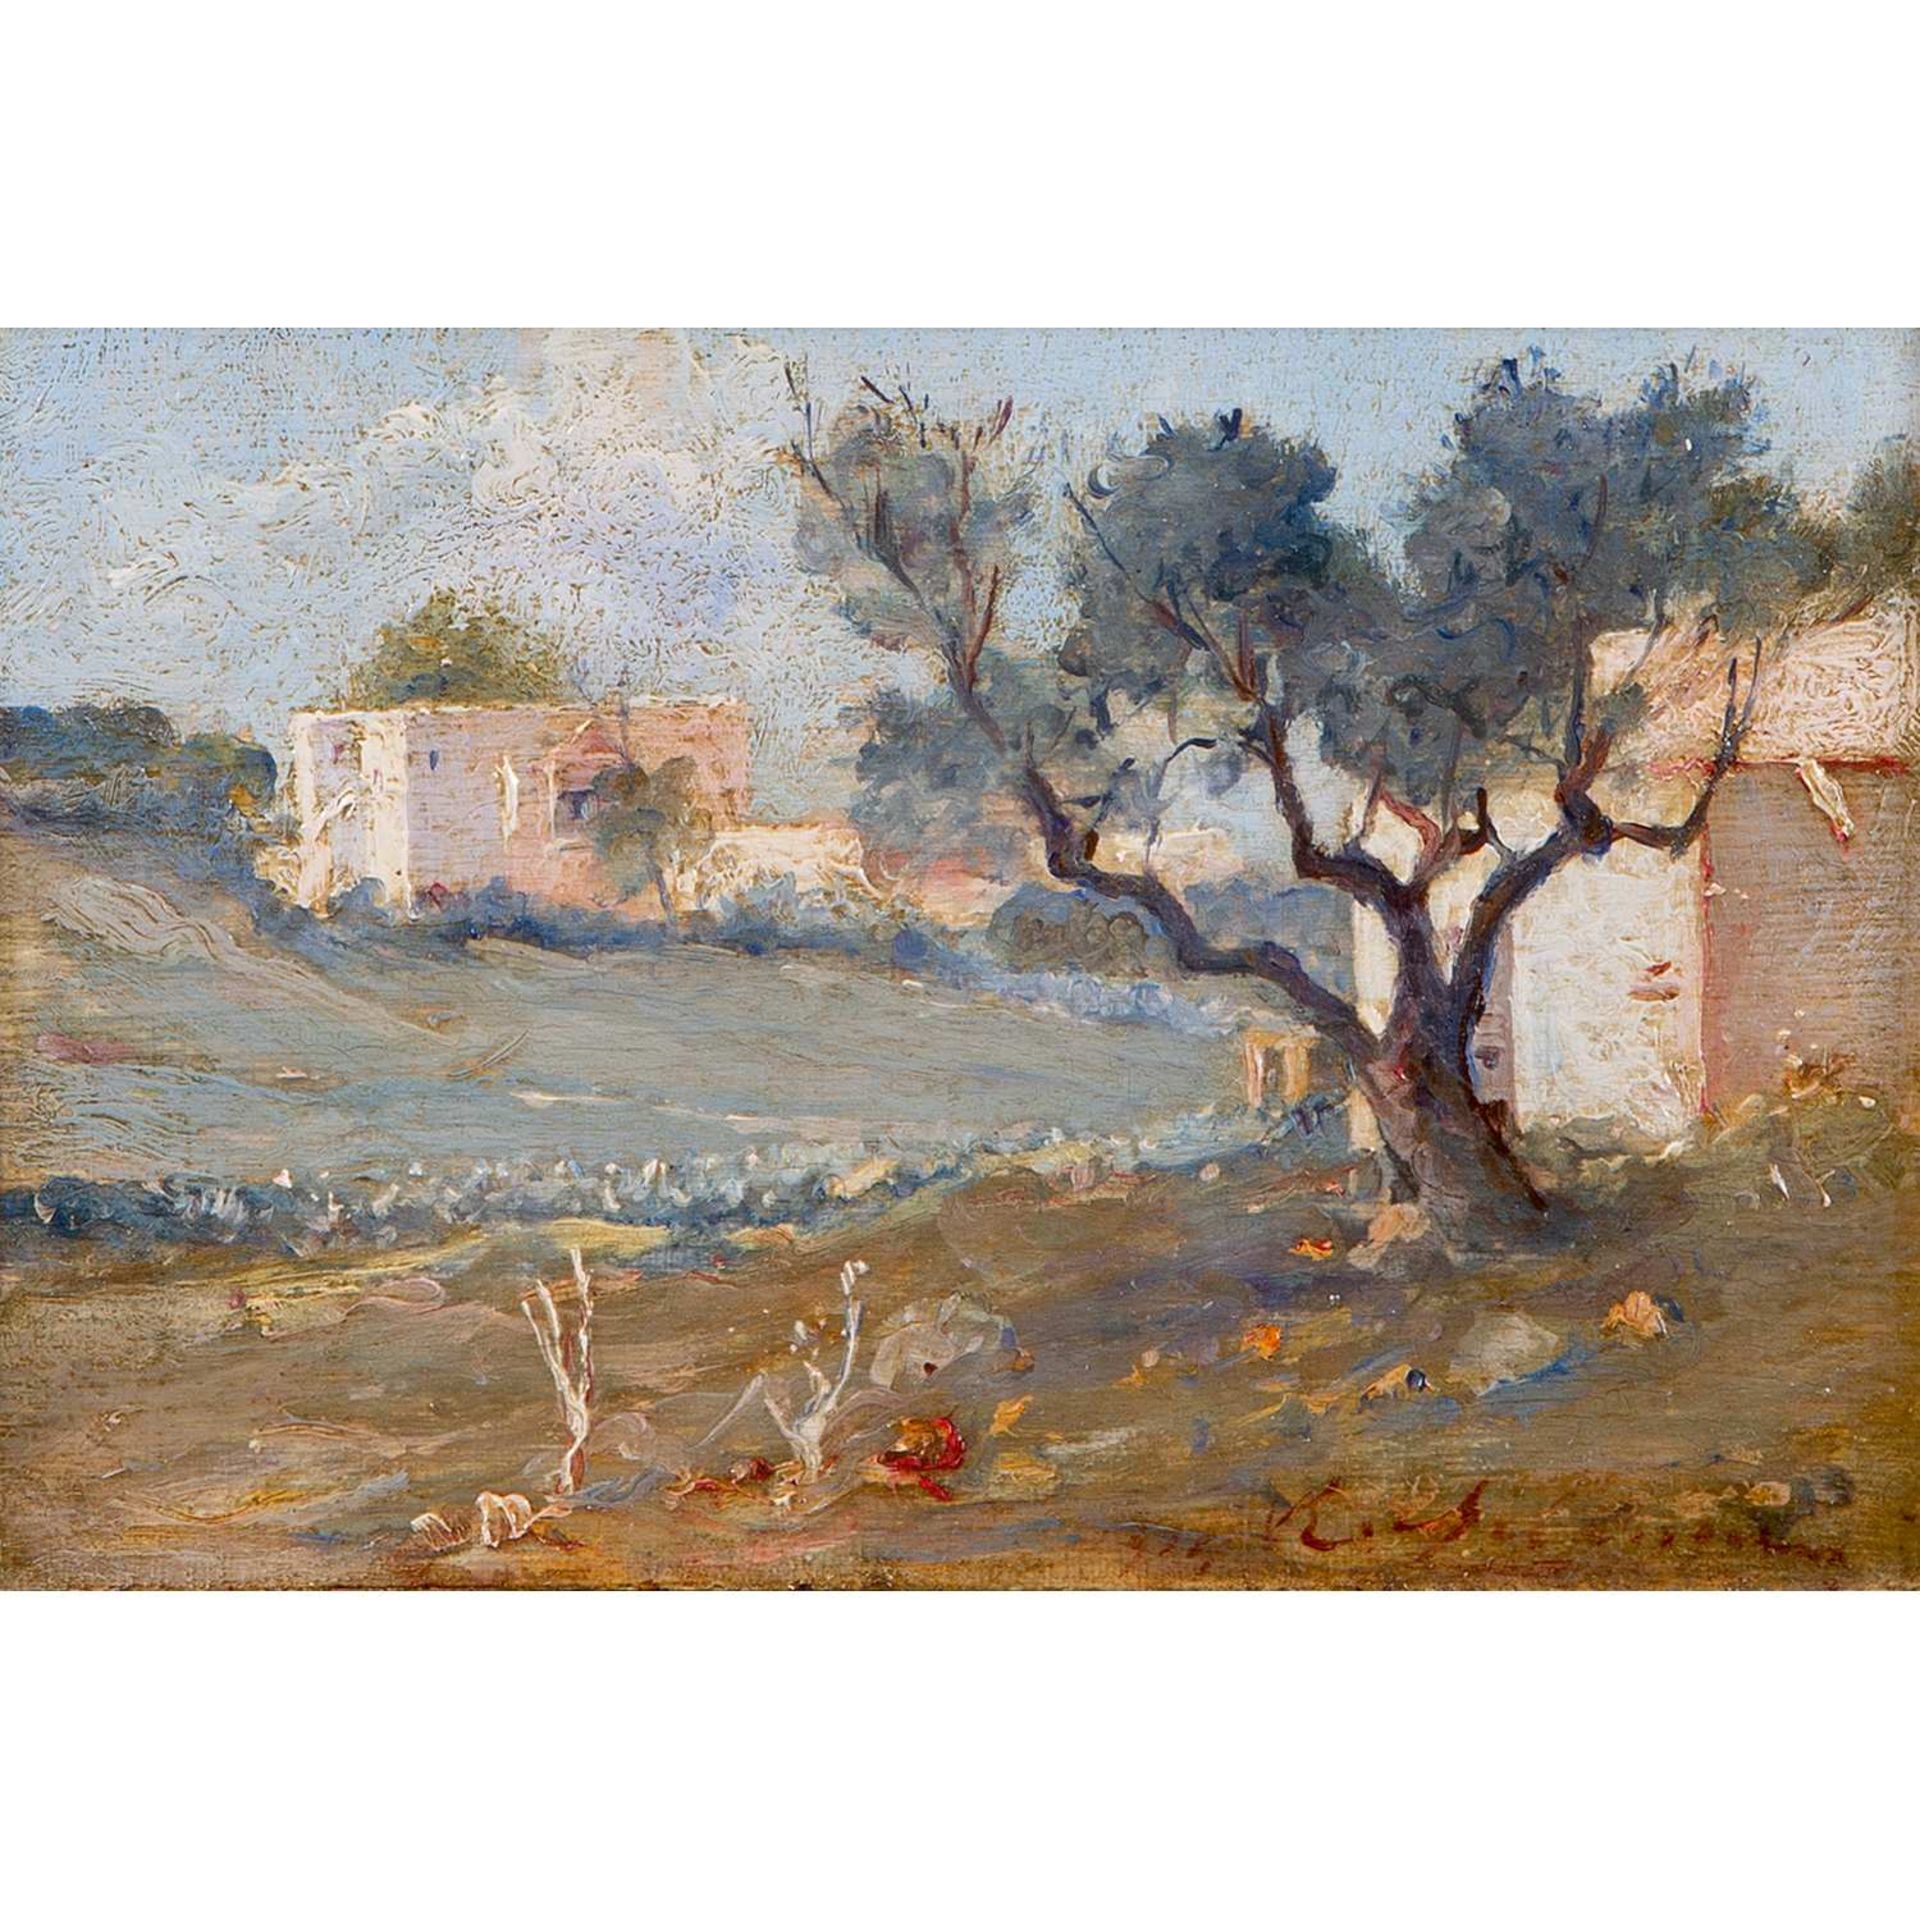 BARON RODOLPHE D'ERLANGER (1872-1932) "UNE VUE de SIDI-BOU-SAÏD PRÈS DE TUNIS, 1913" VIEW OF SIDI-